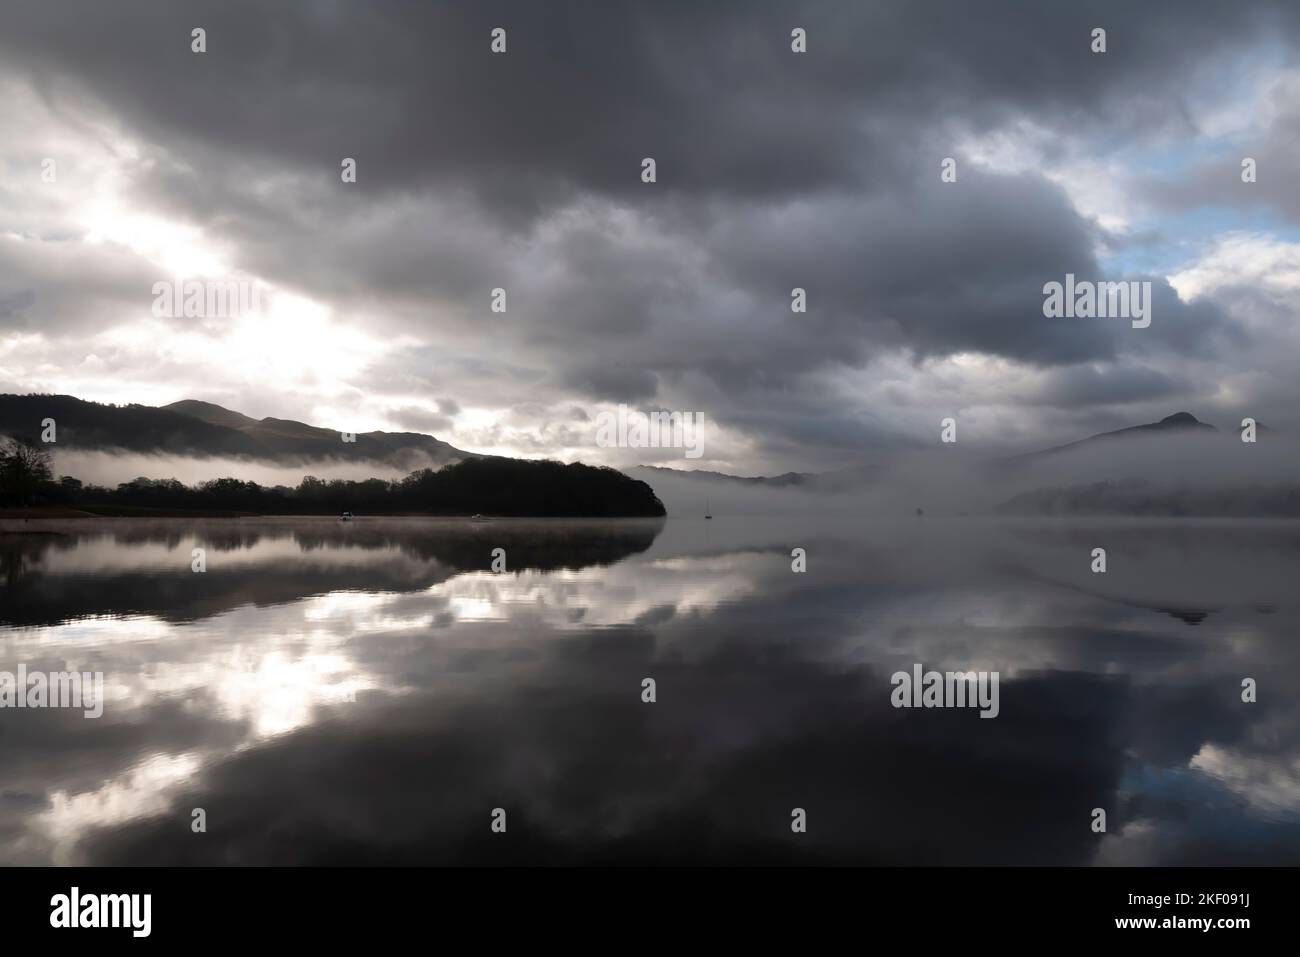 La brume matinale et les nuages bas surplombs Derwentwater, district des lacs anglais. Banque D'Images